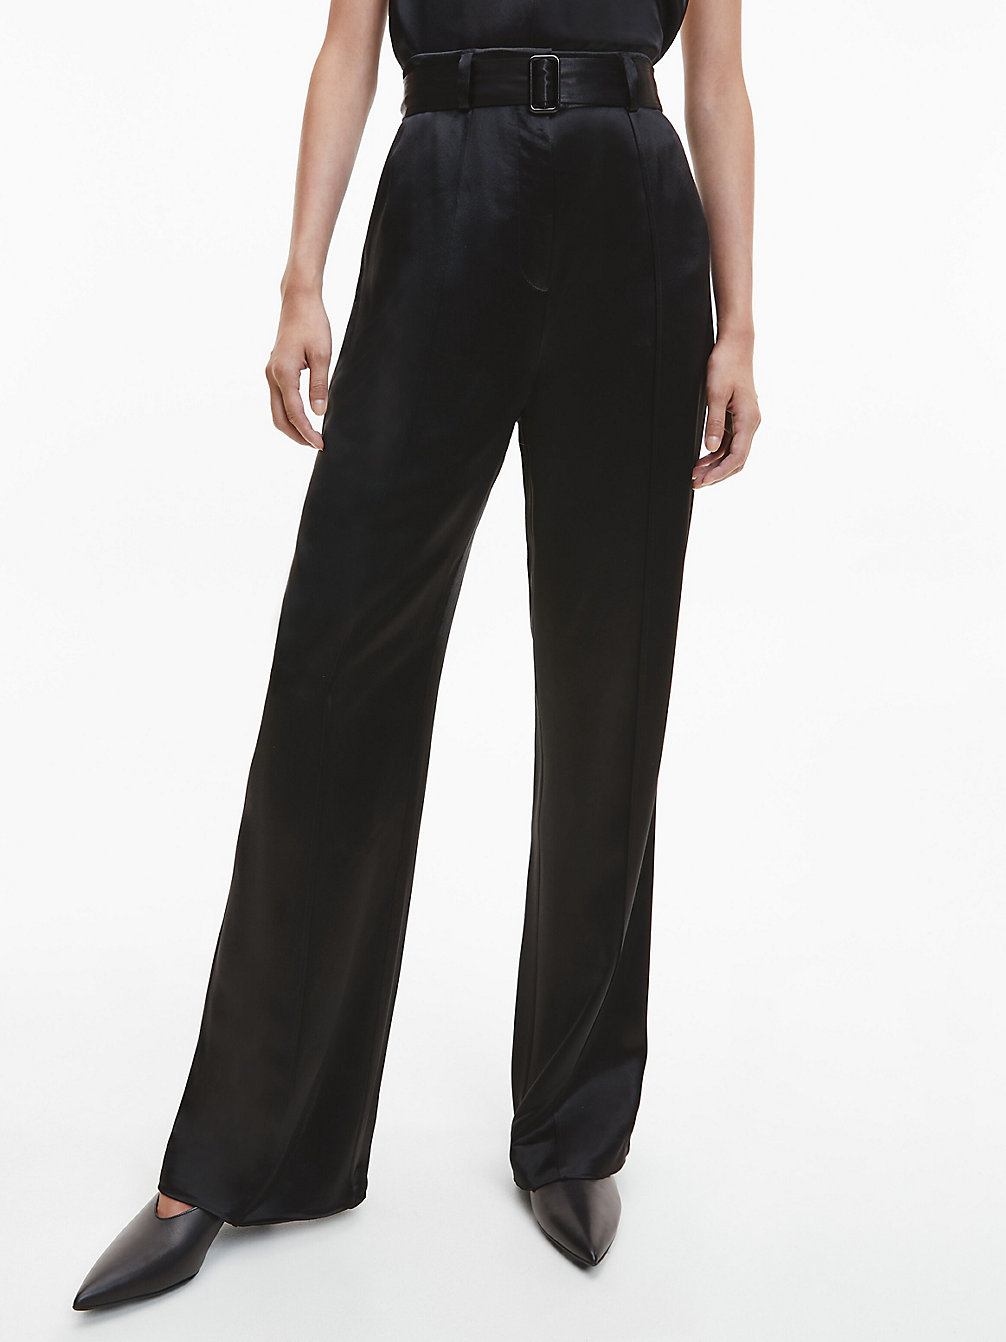 CK BLACK > Satynowe Spodnie Z Szerokimi Nogawkami > undefined Kobiety - Calvin Klein